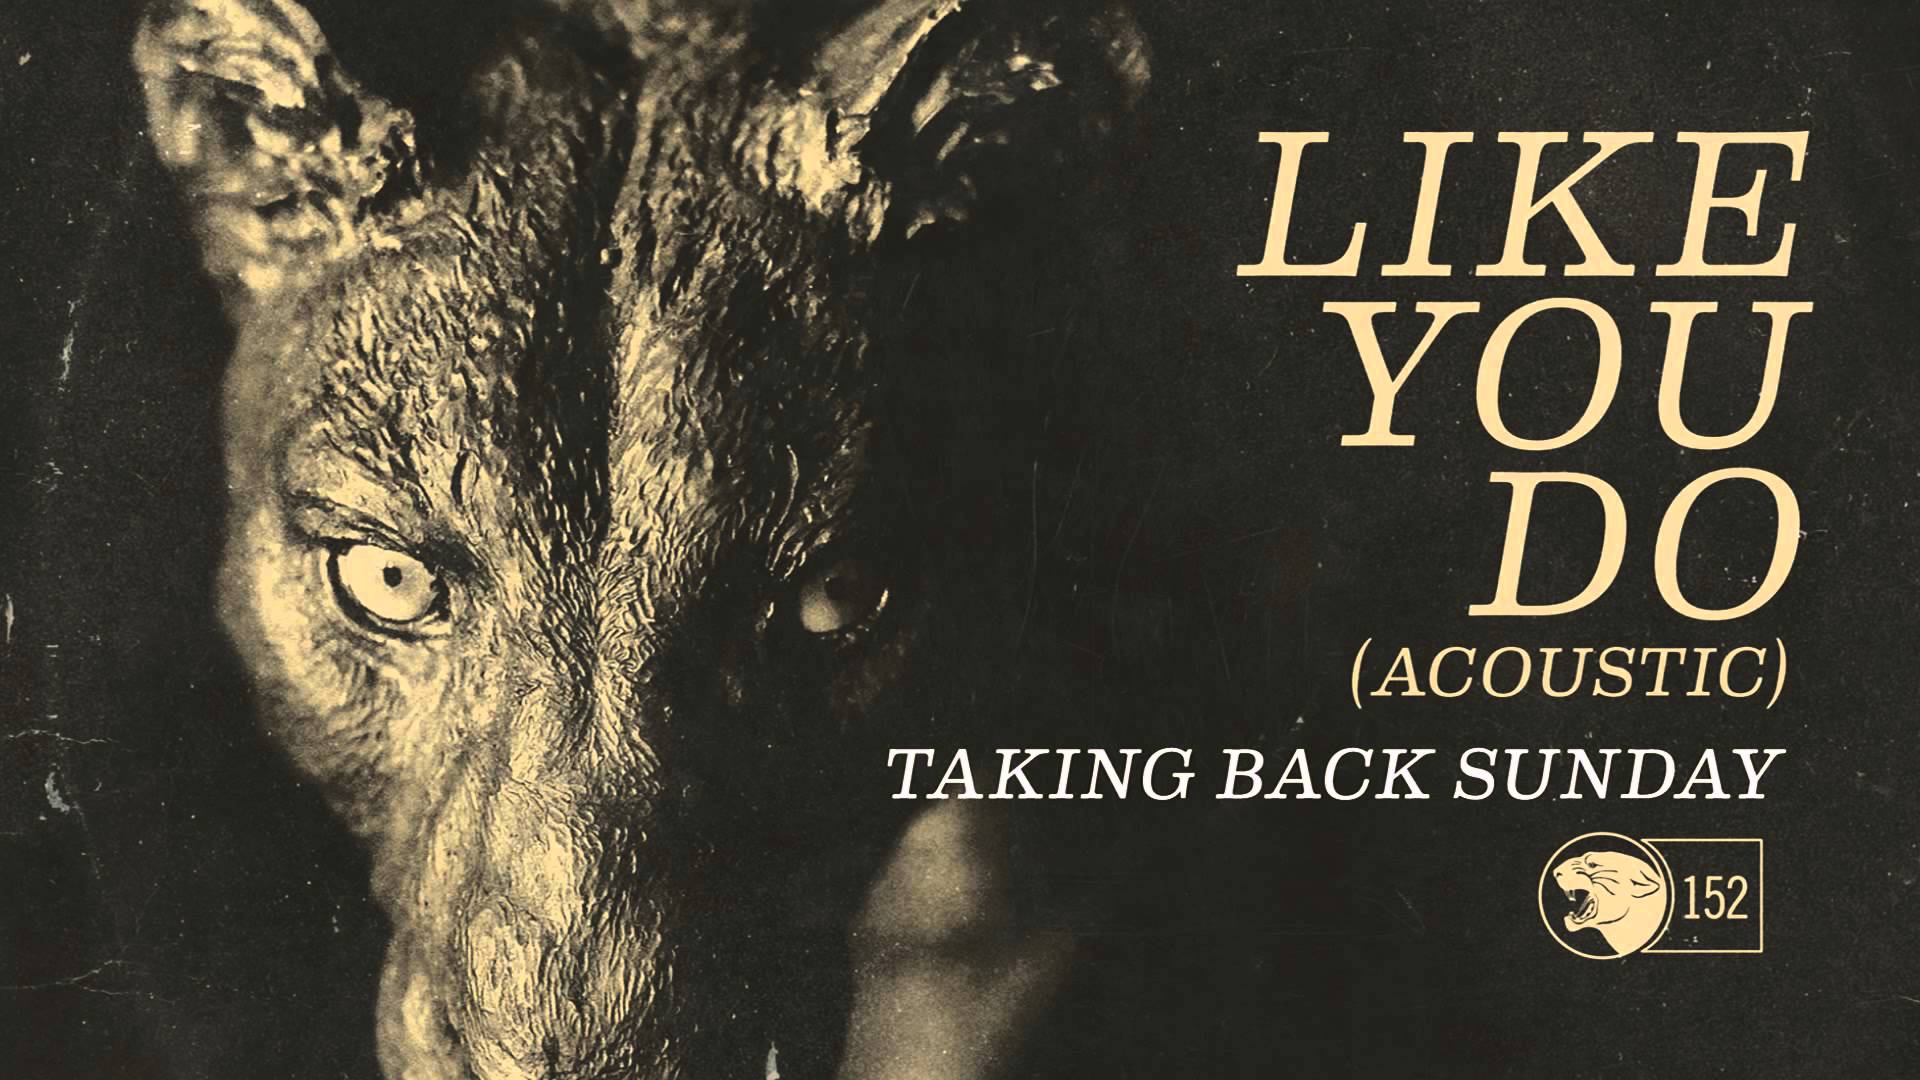 Taking Back Sunday - Like You Do Acoustic - YouTube